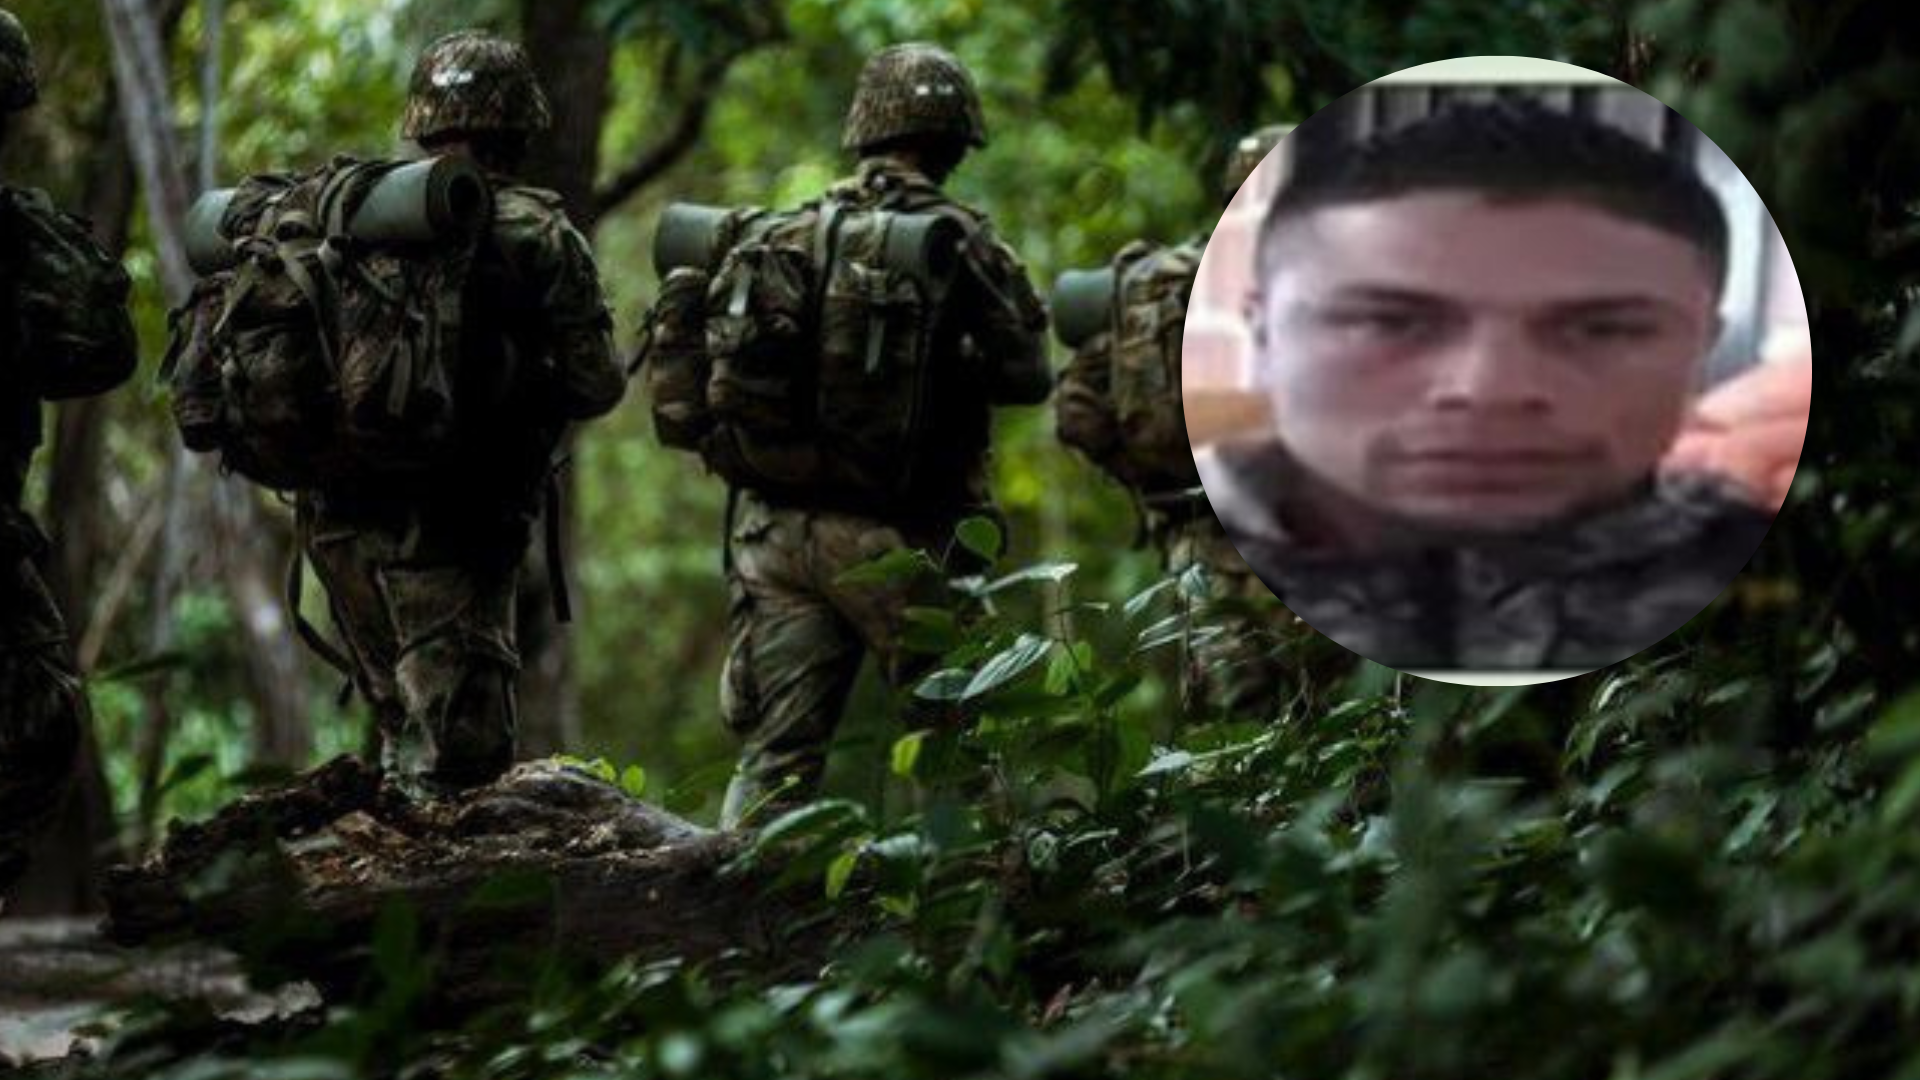 $ 100 millones de recompensa por alias Marlon, cabecilla de la disidencia que asesinó a seis soldados en Cauca